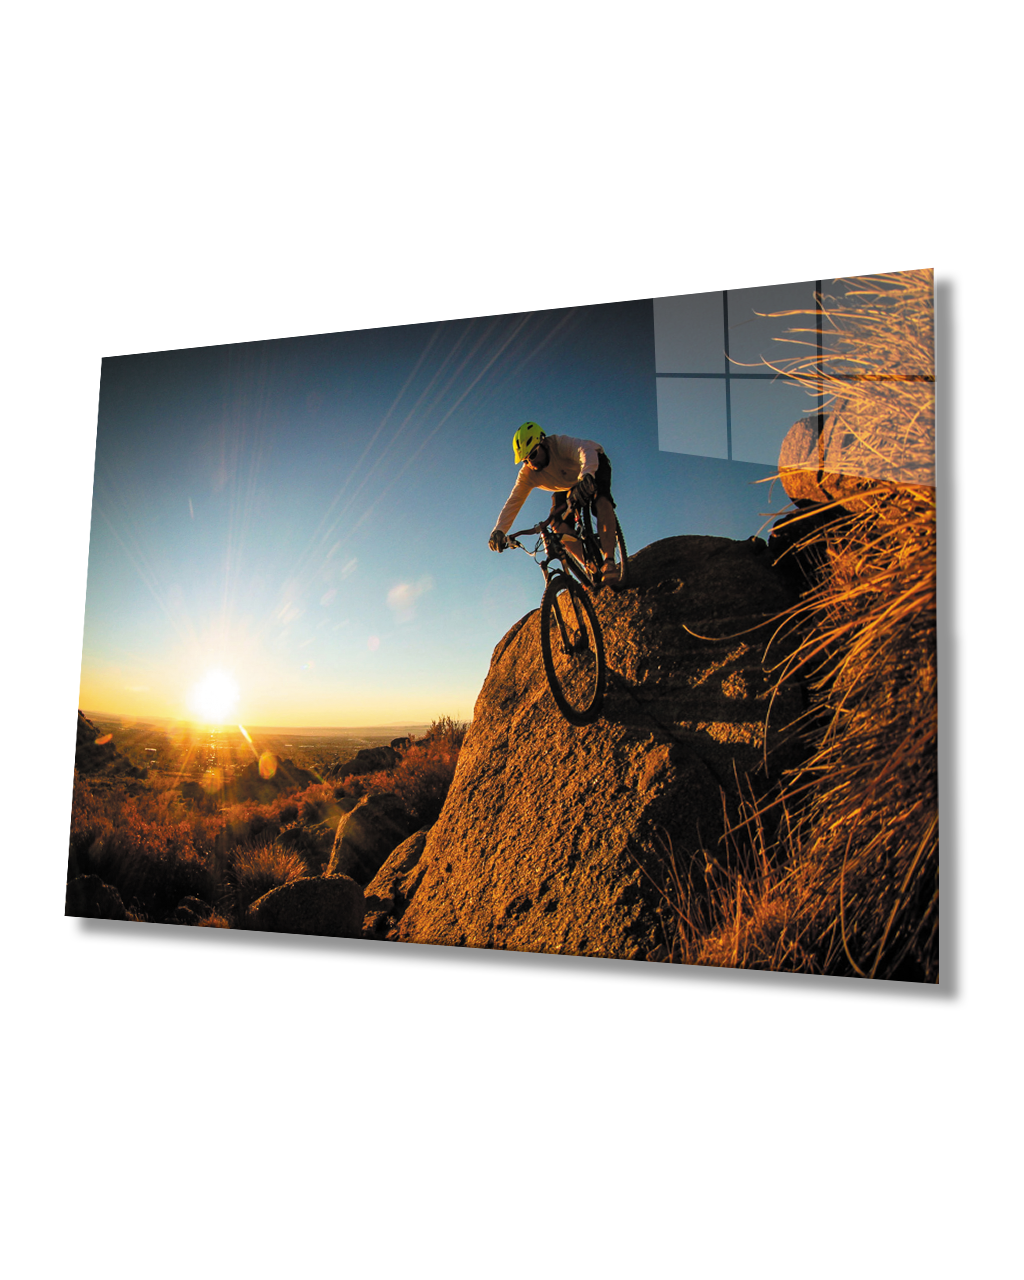 Gün Batımı Manzarasında Bisiklet Sporcusu Cam Tablo  4mm Dayanıklı Temperli Cam Cycling Athlete Glass Table In Sunset Landscape 4mm Durable Tempered Glass